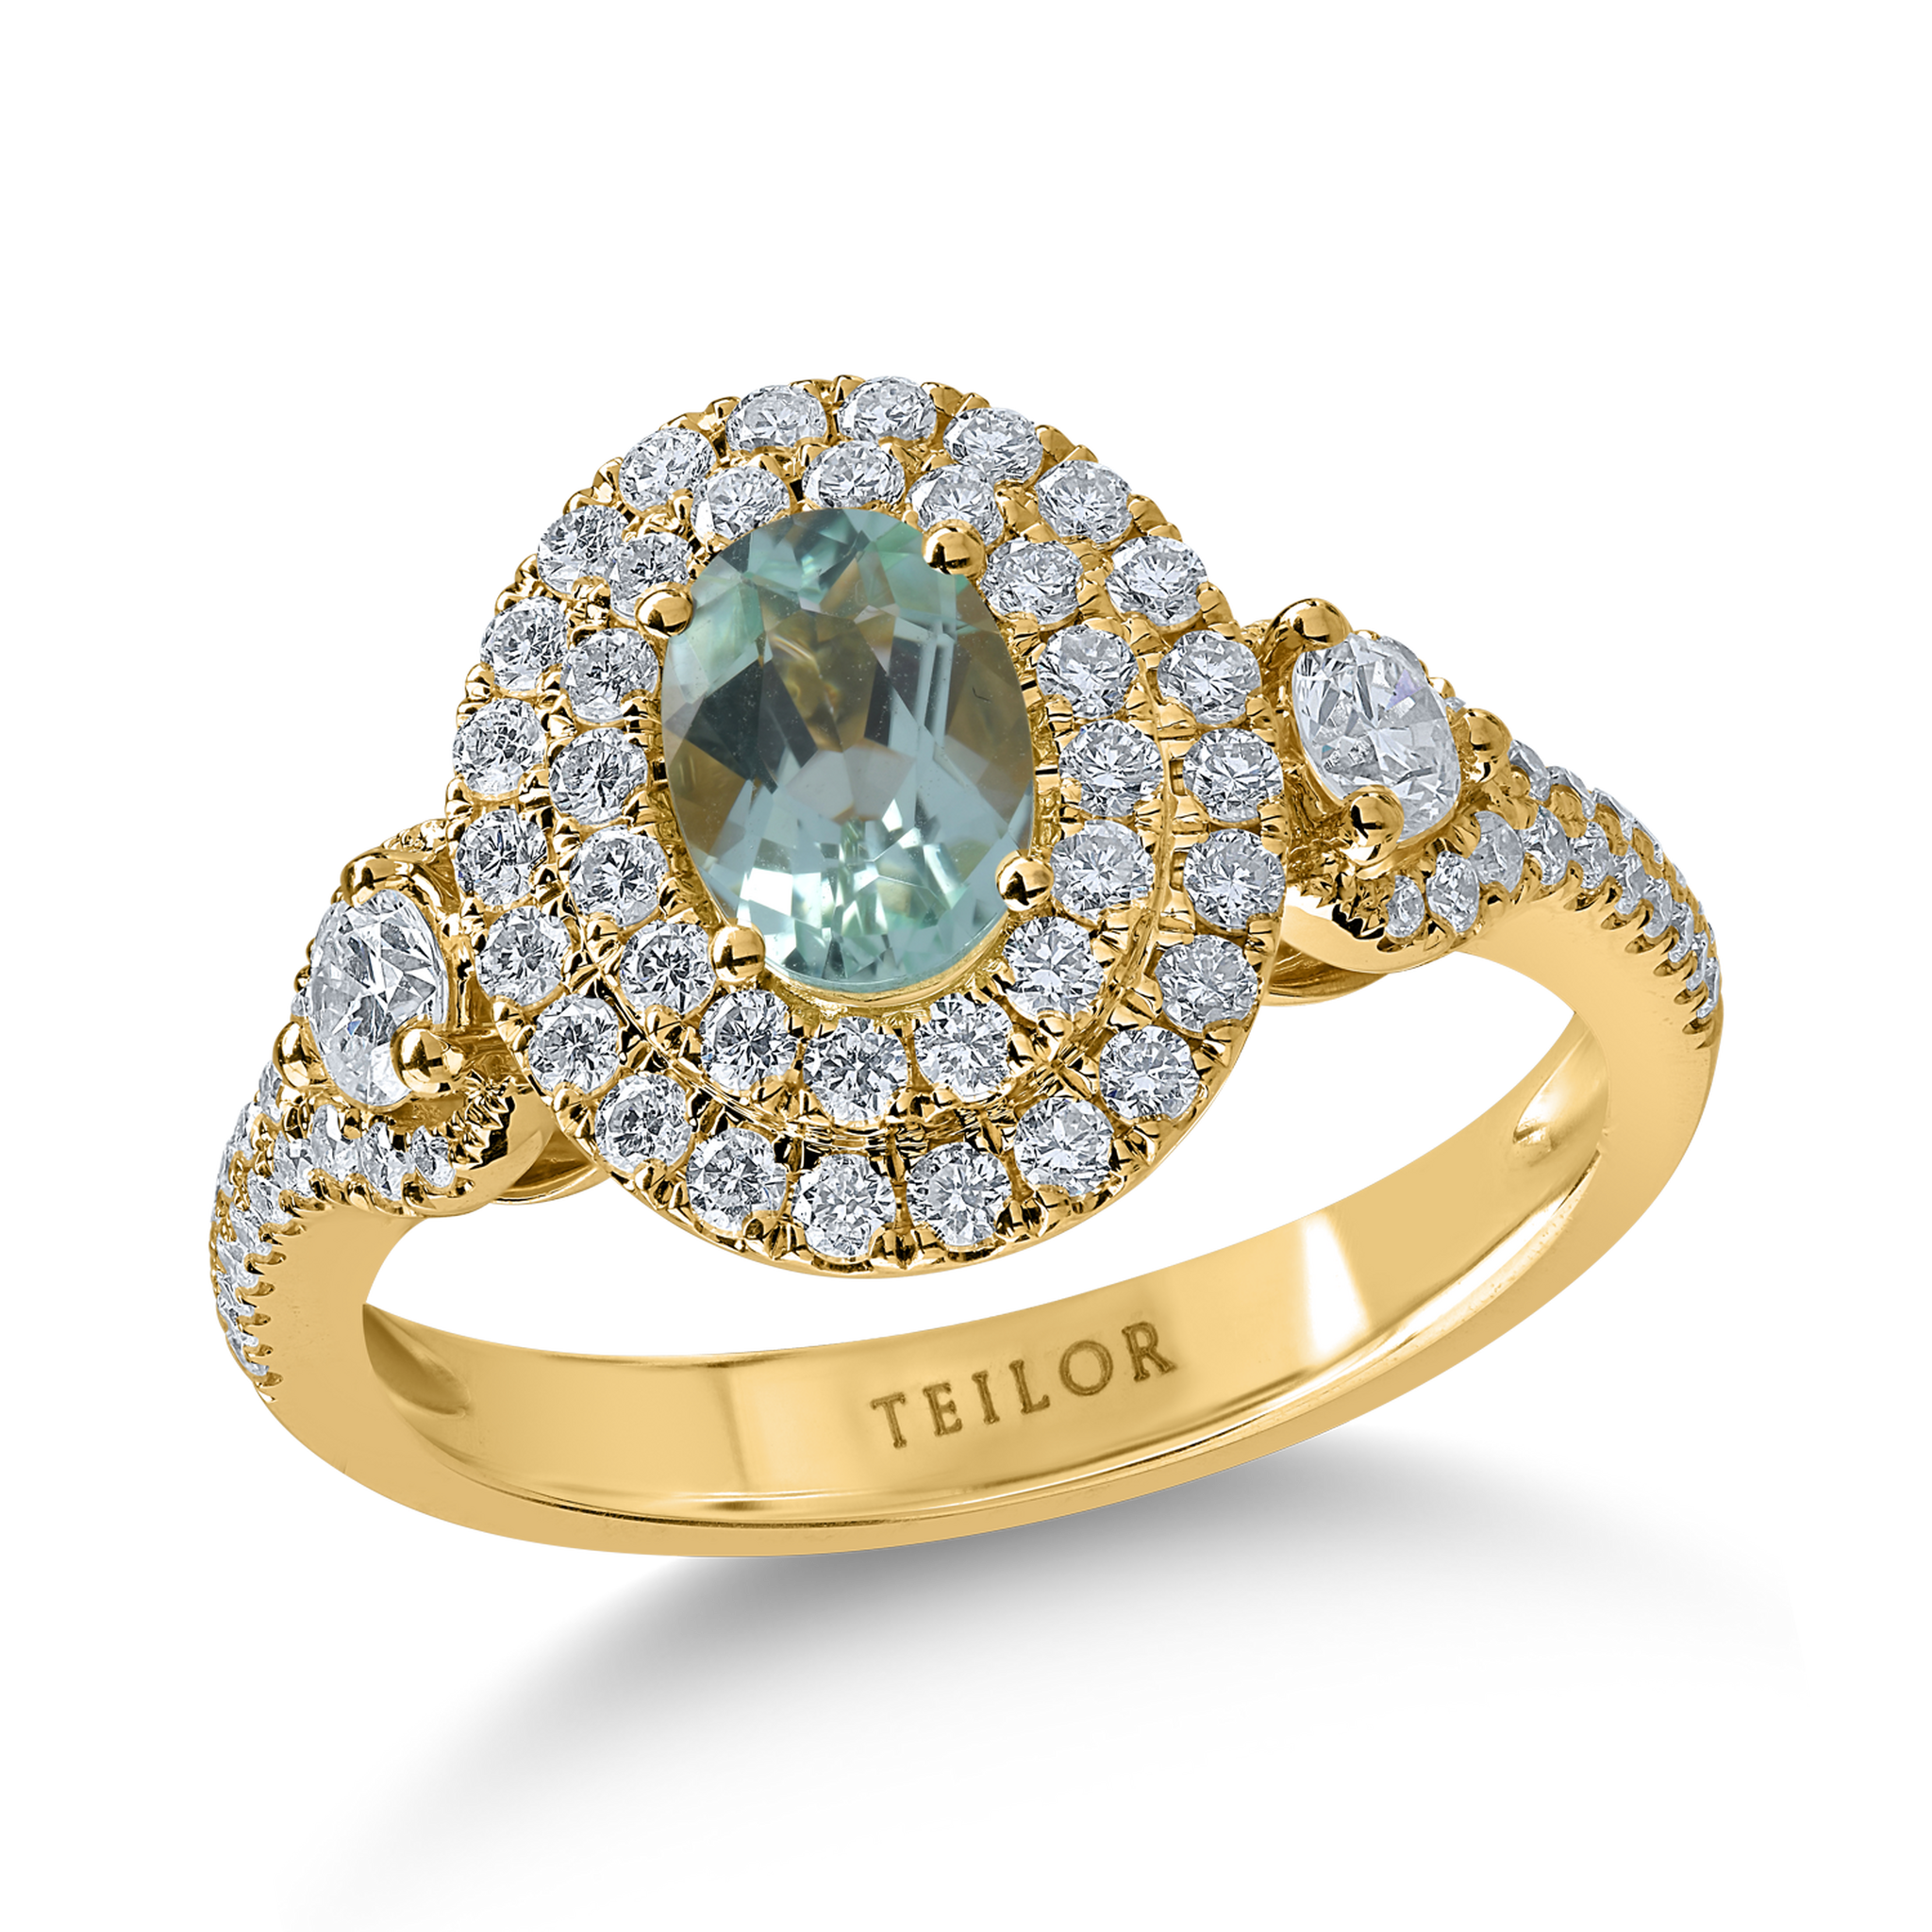 Sárga arany gyűrű 0.73ct paraiba topázzal és 0.78ct gyémántokkal